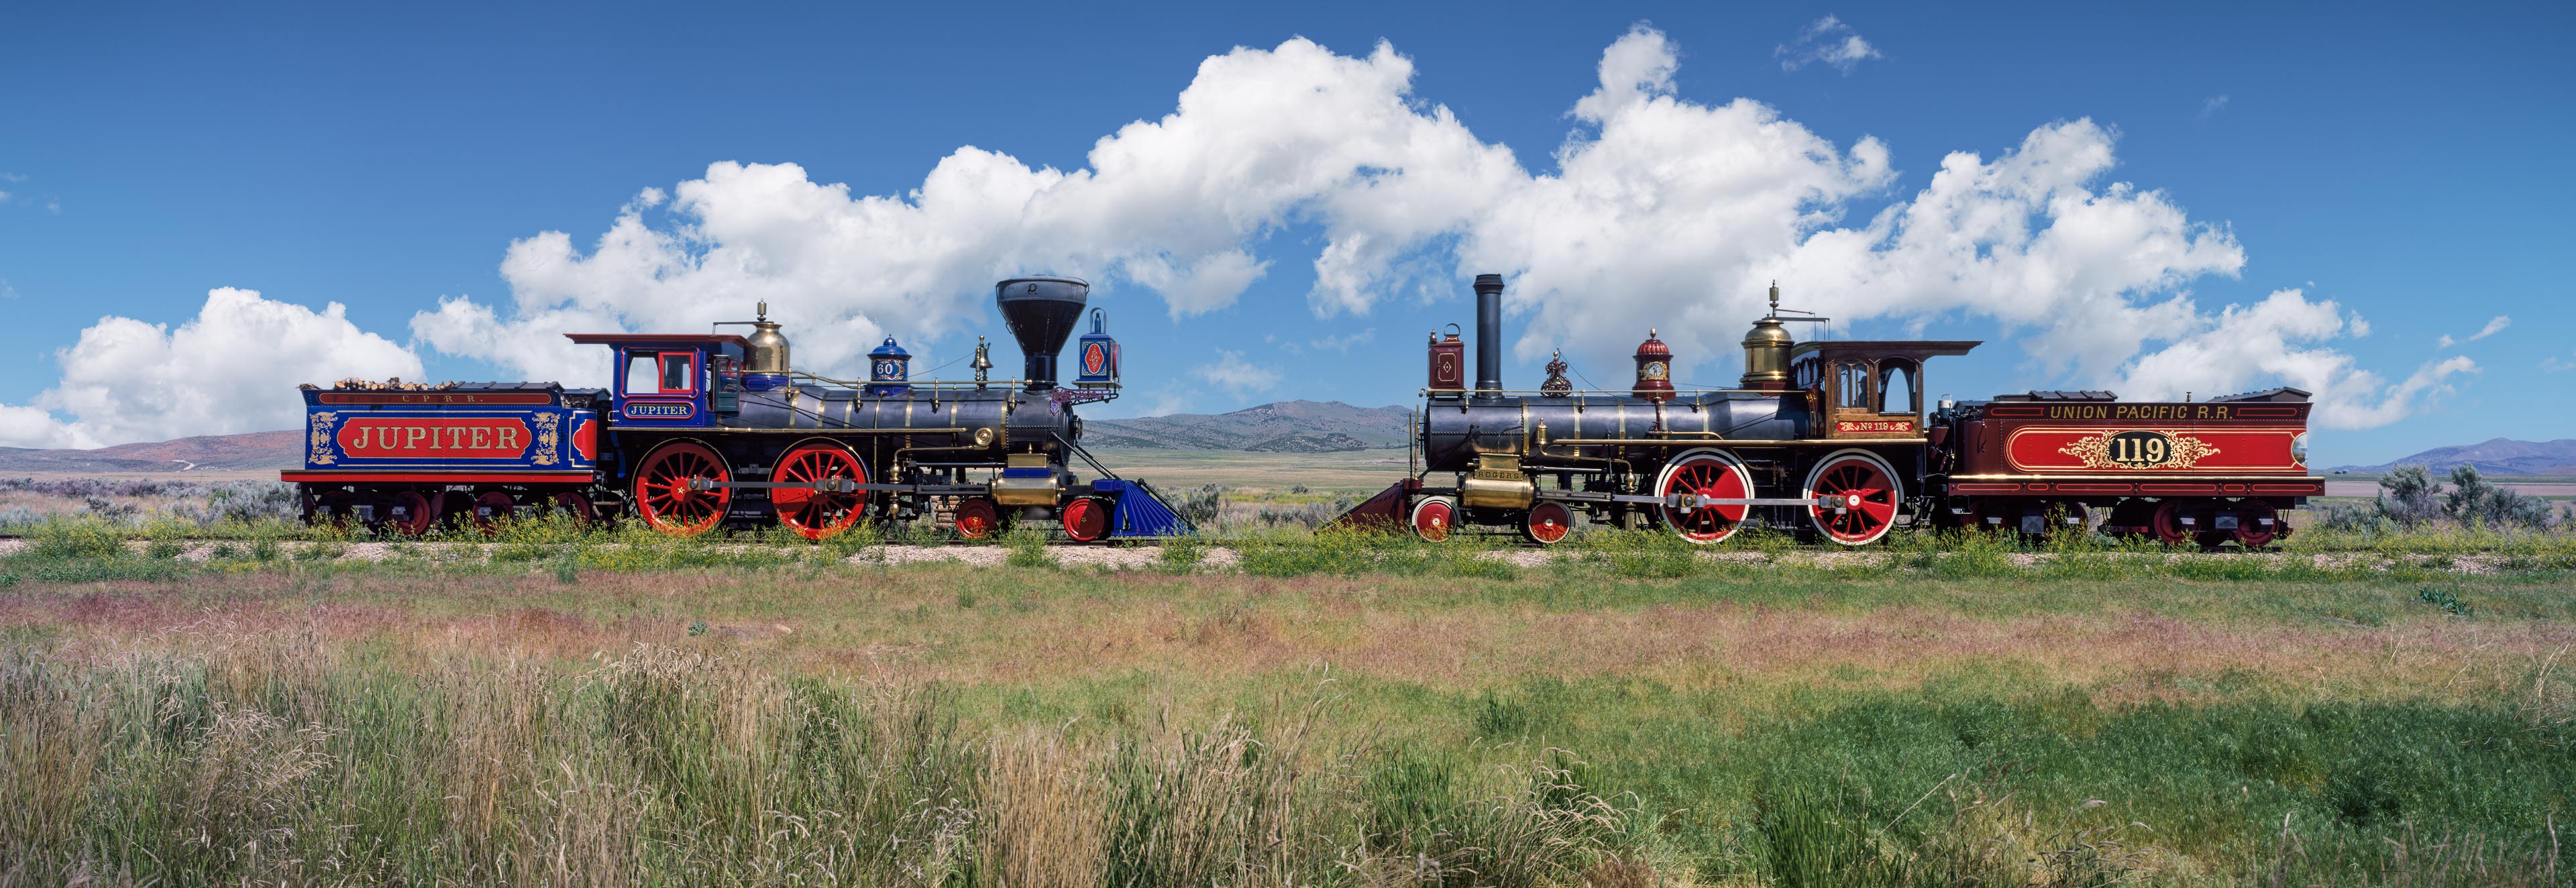 Locomotives Jupiter and 119, Golden Spike National Monument, Utah, USA